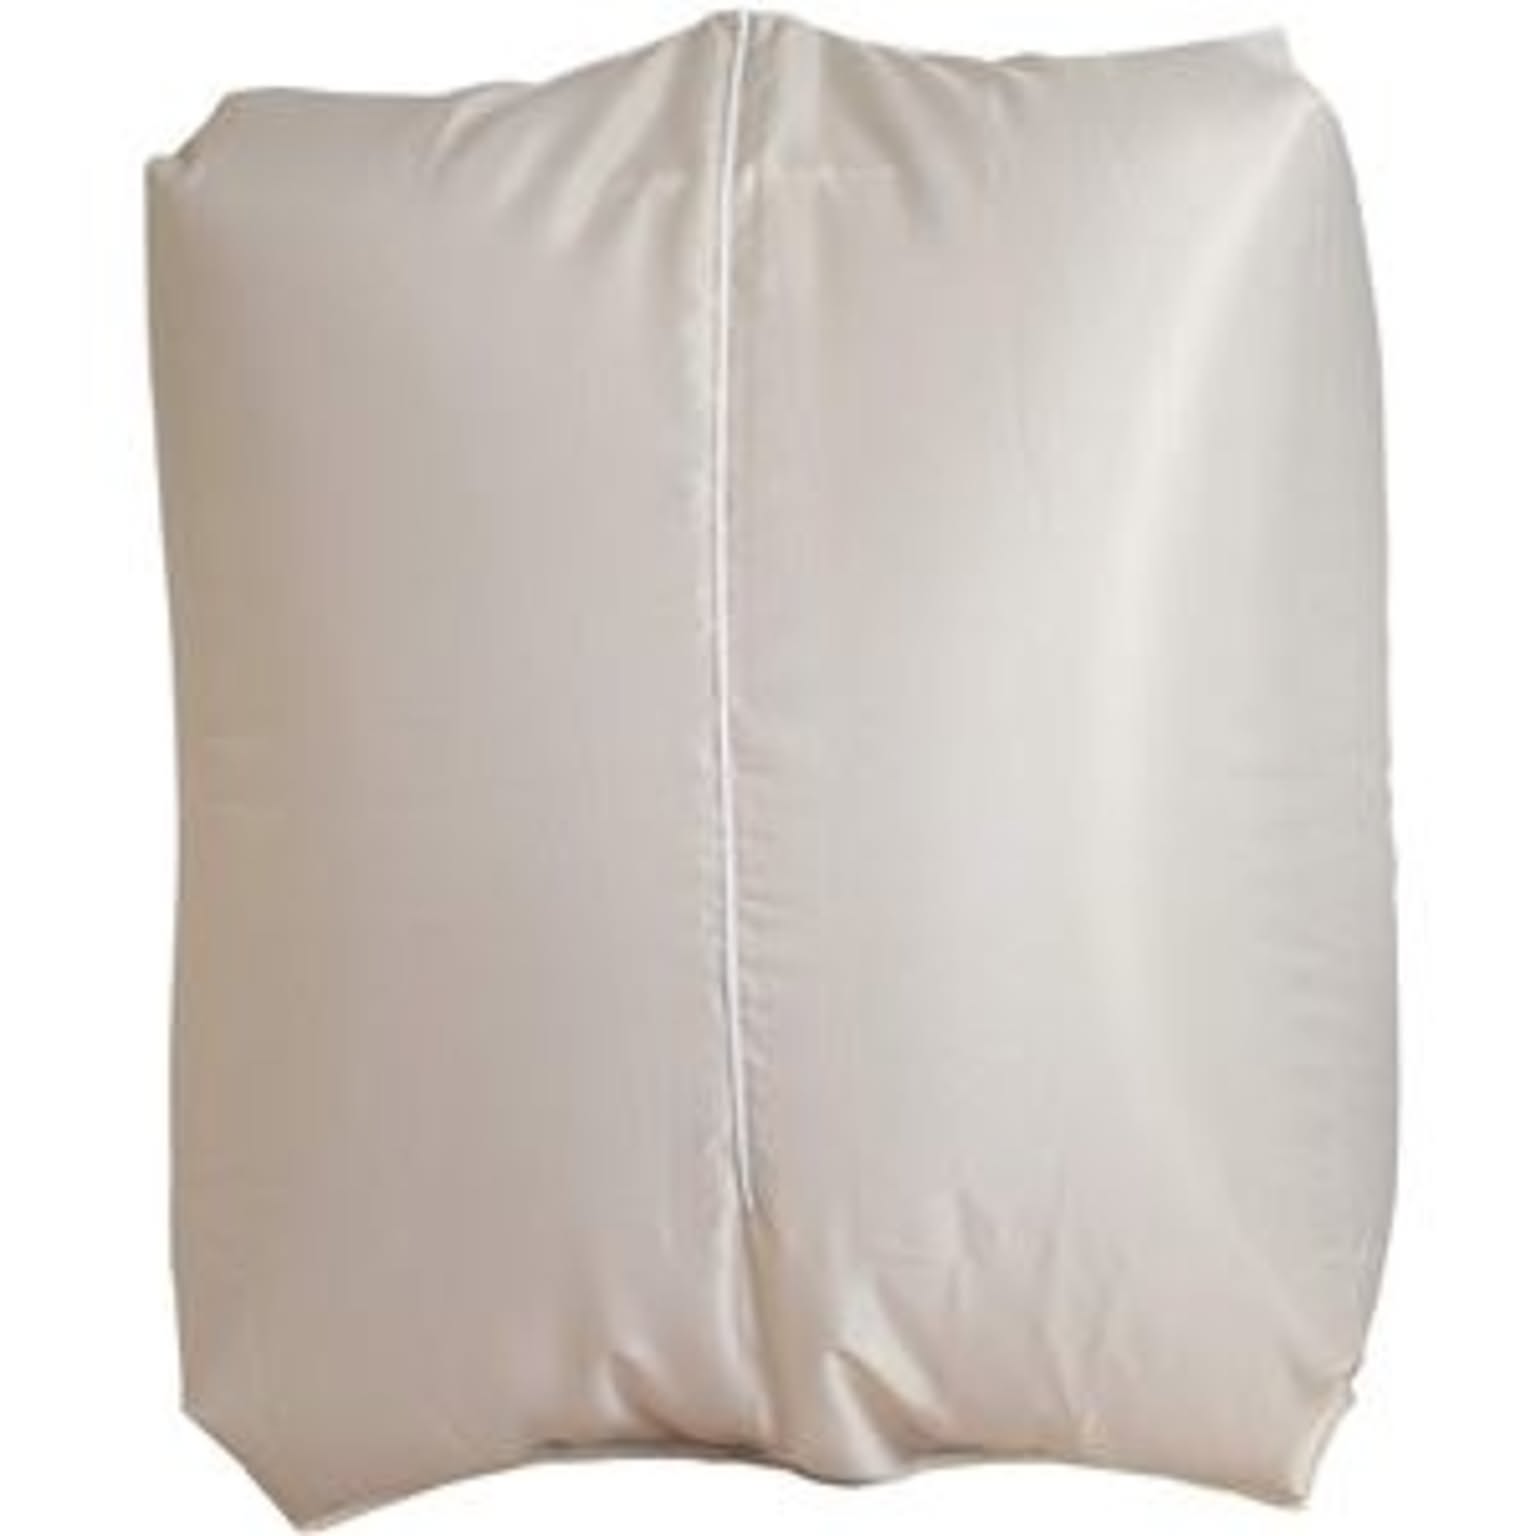 ファイン ランドリー衣類乾燥袋 40個セット 約幅80×高さ130×マチ35cm ベージュ